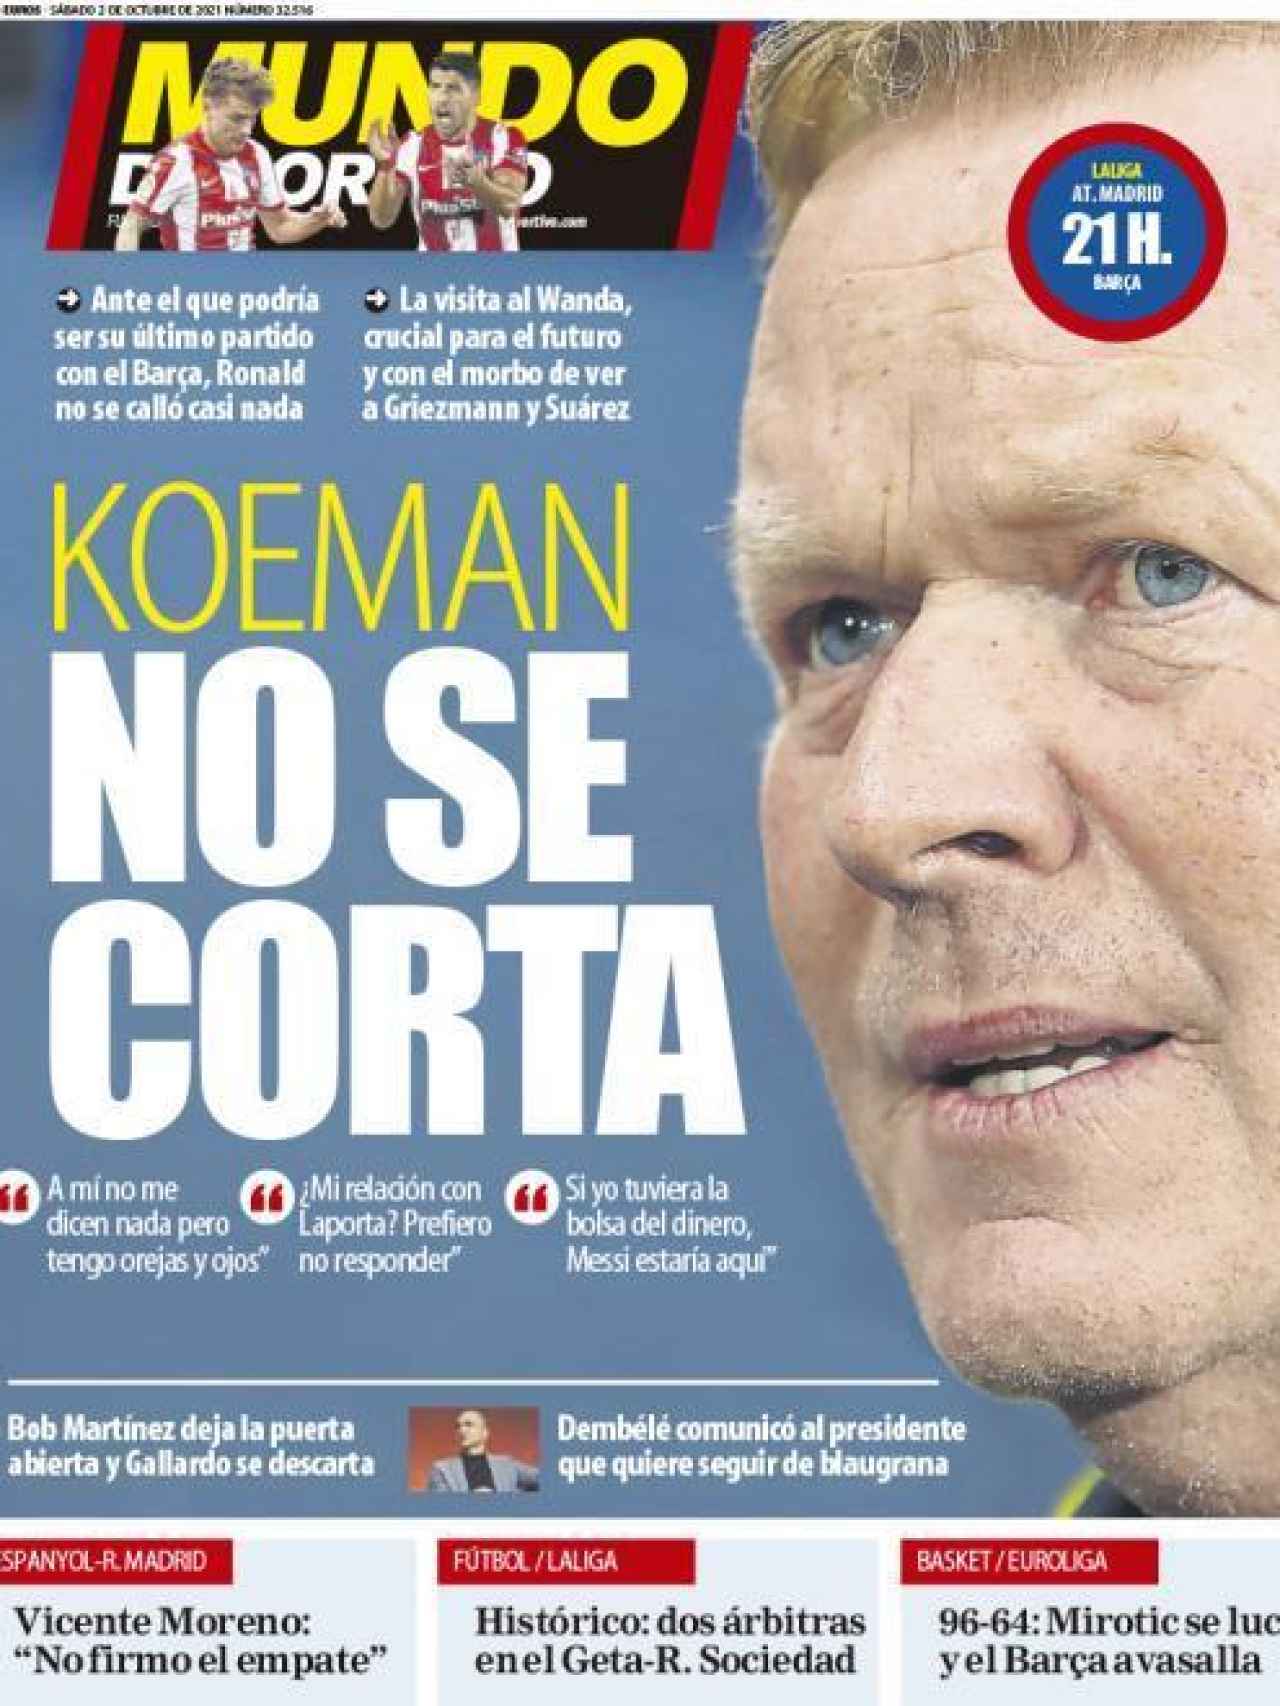 La portada del diario Mundo Deportivo (02/10/2021)